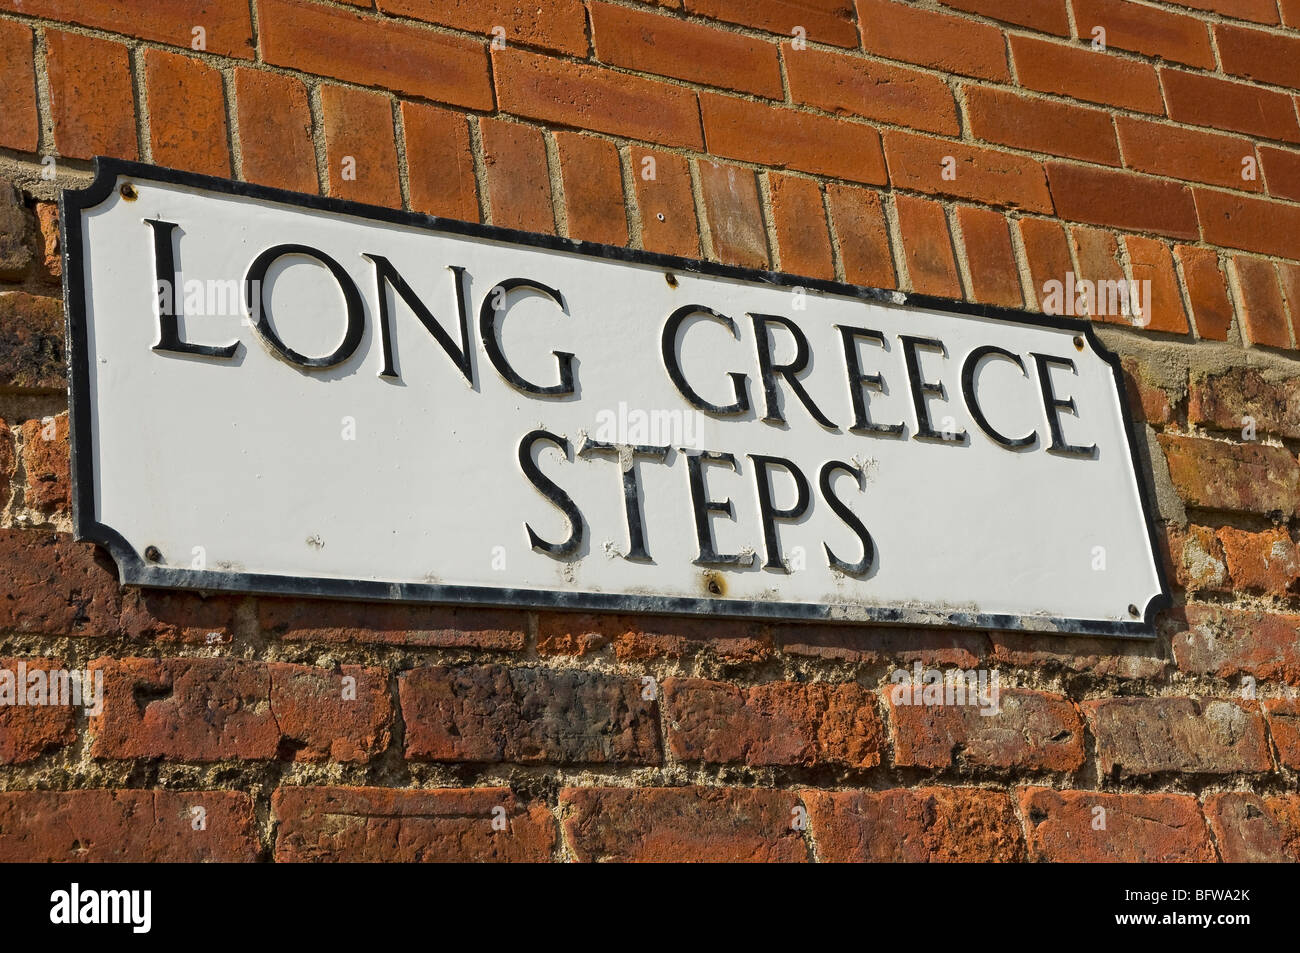 Nahaufnahme von Straßenschild für lange Griechenland Schritte Scarborough North Yorkshire England UK United Kingdom GB Great Britain Stockfoto